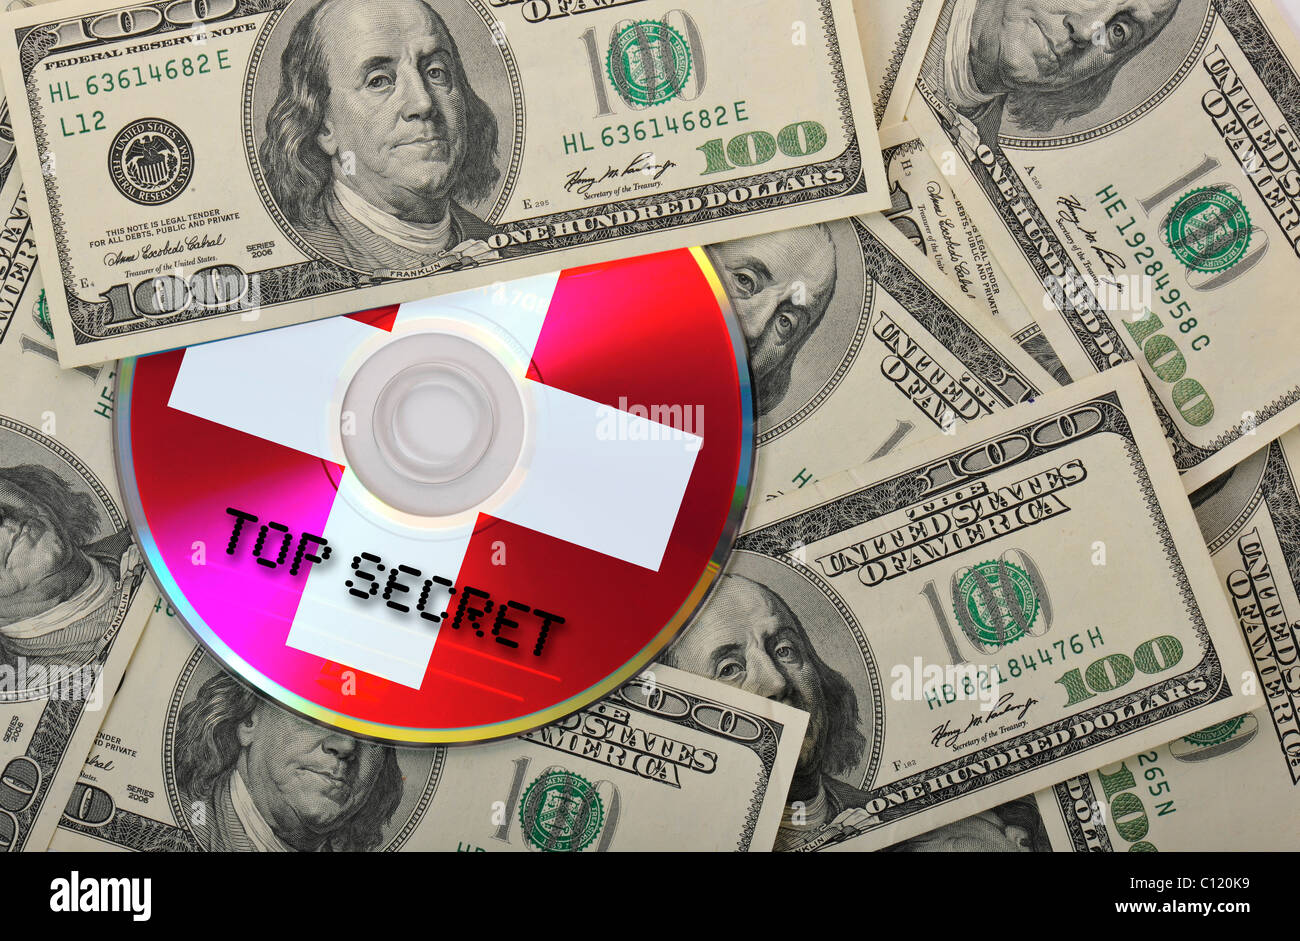 DVD, CD, 100-Dollar-Scheine, symbolisches Bild für den Kauf von Bankunterlagen, Steuerhinterziehung, Datenschutz, Bankgeheimnis Stockfoto